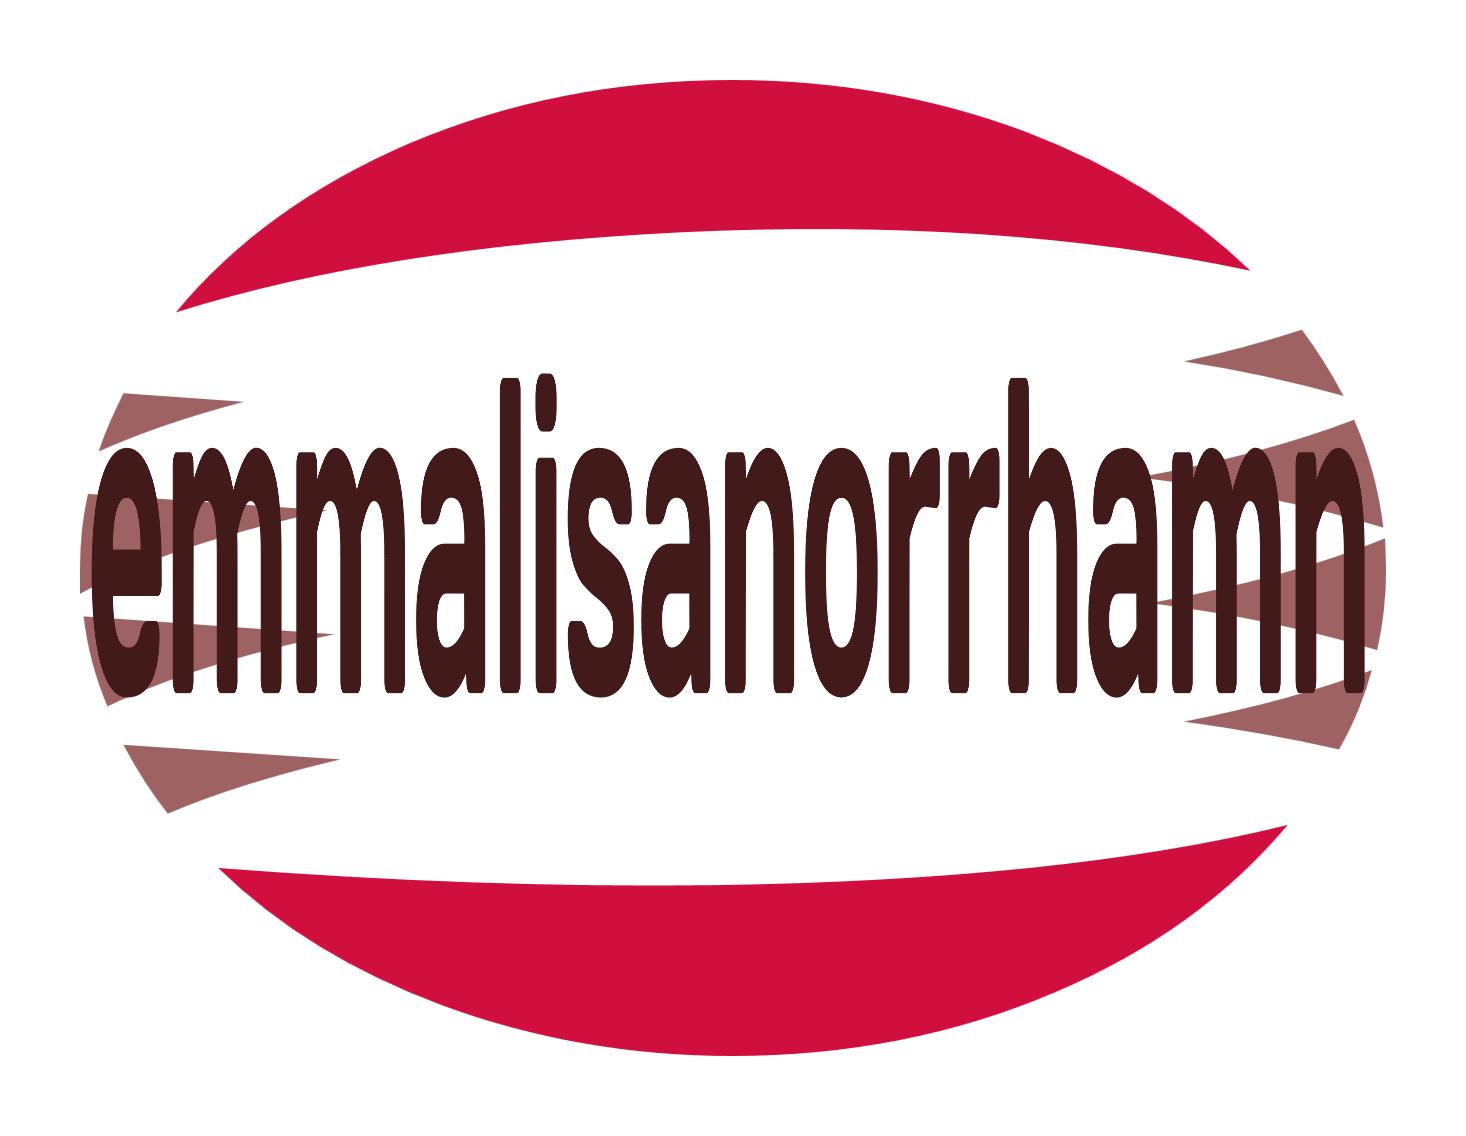 Emmalisanorrhamn - Agen Poker Online